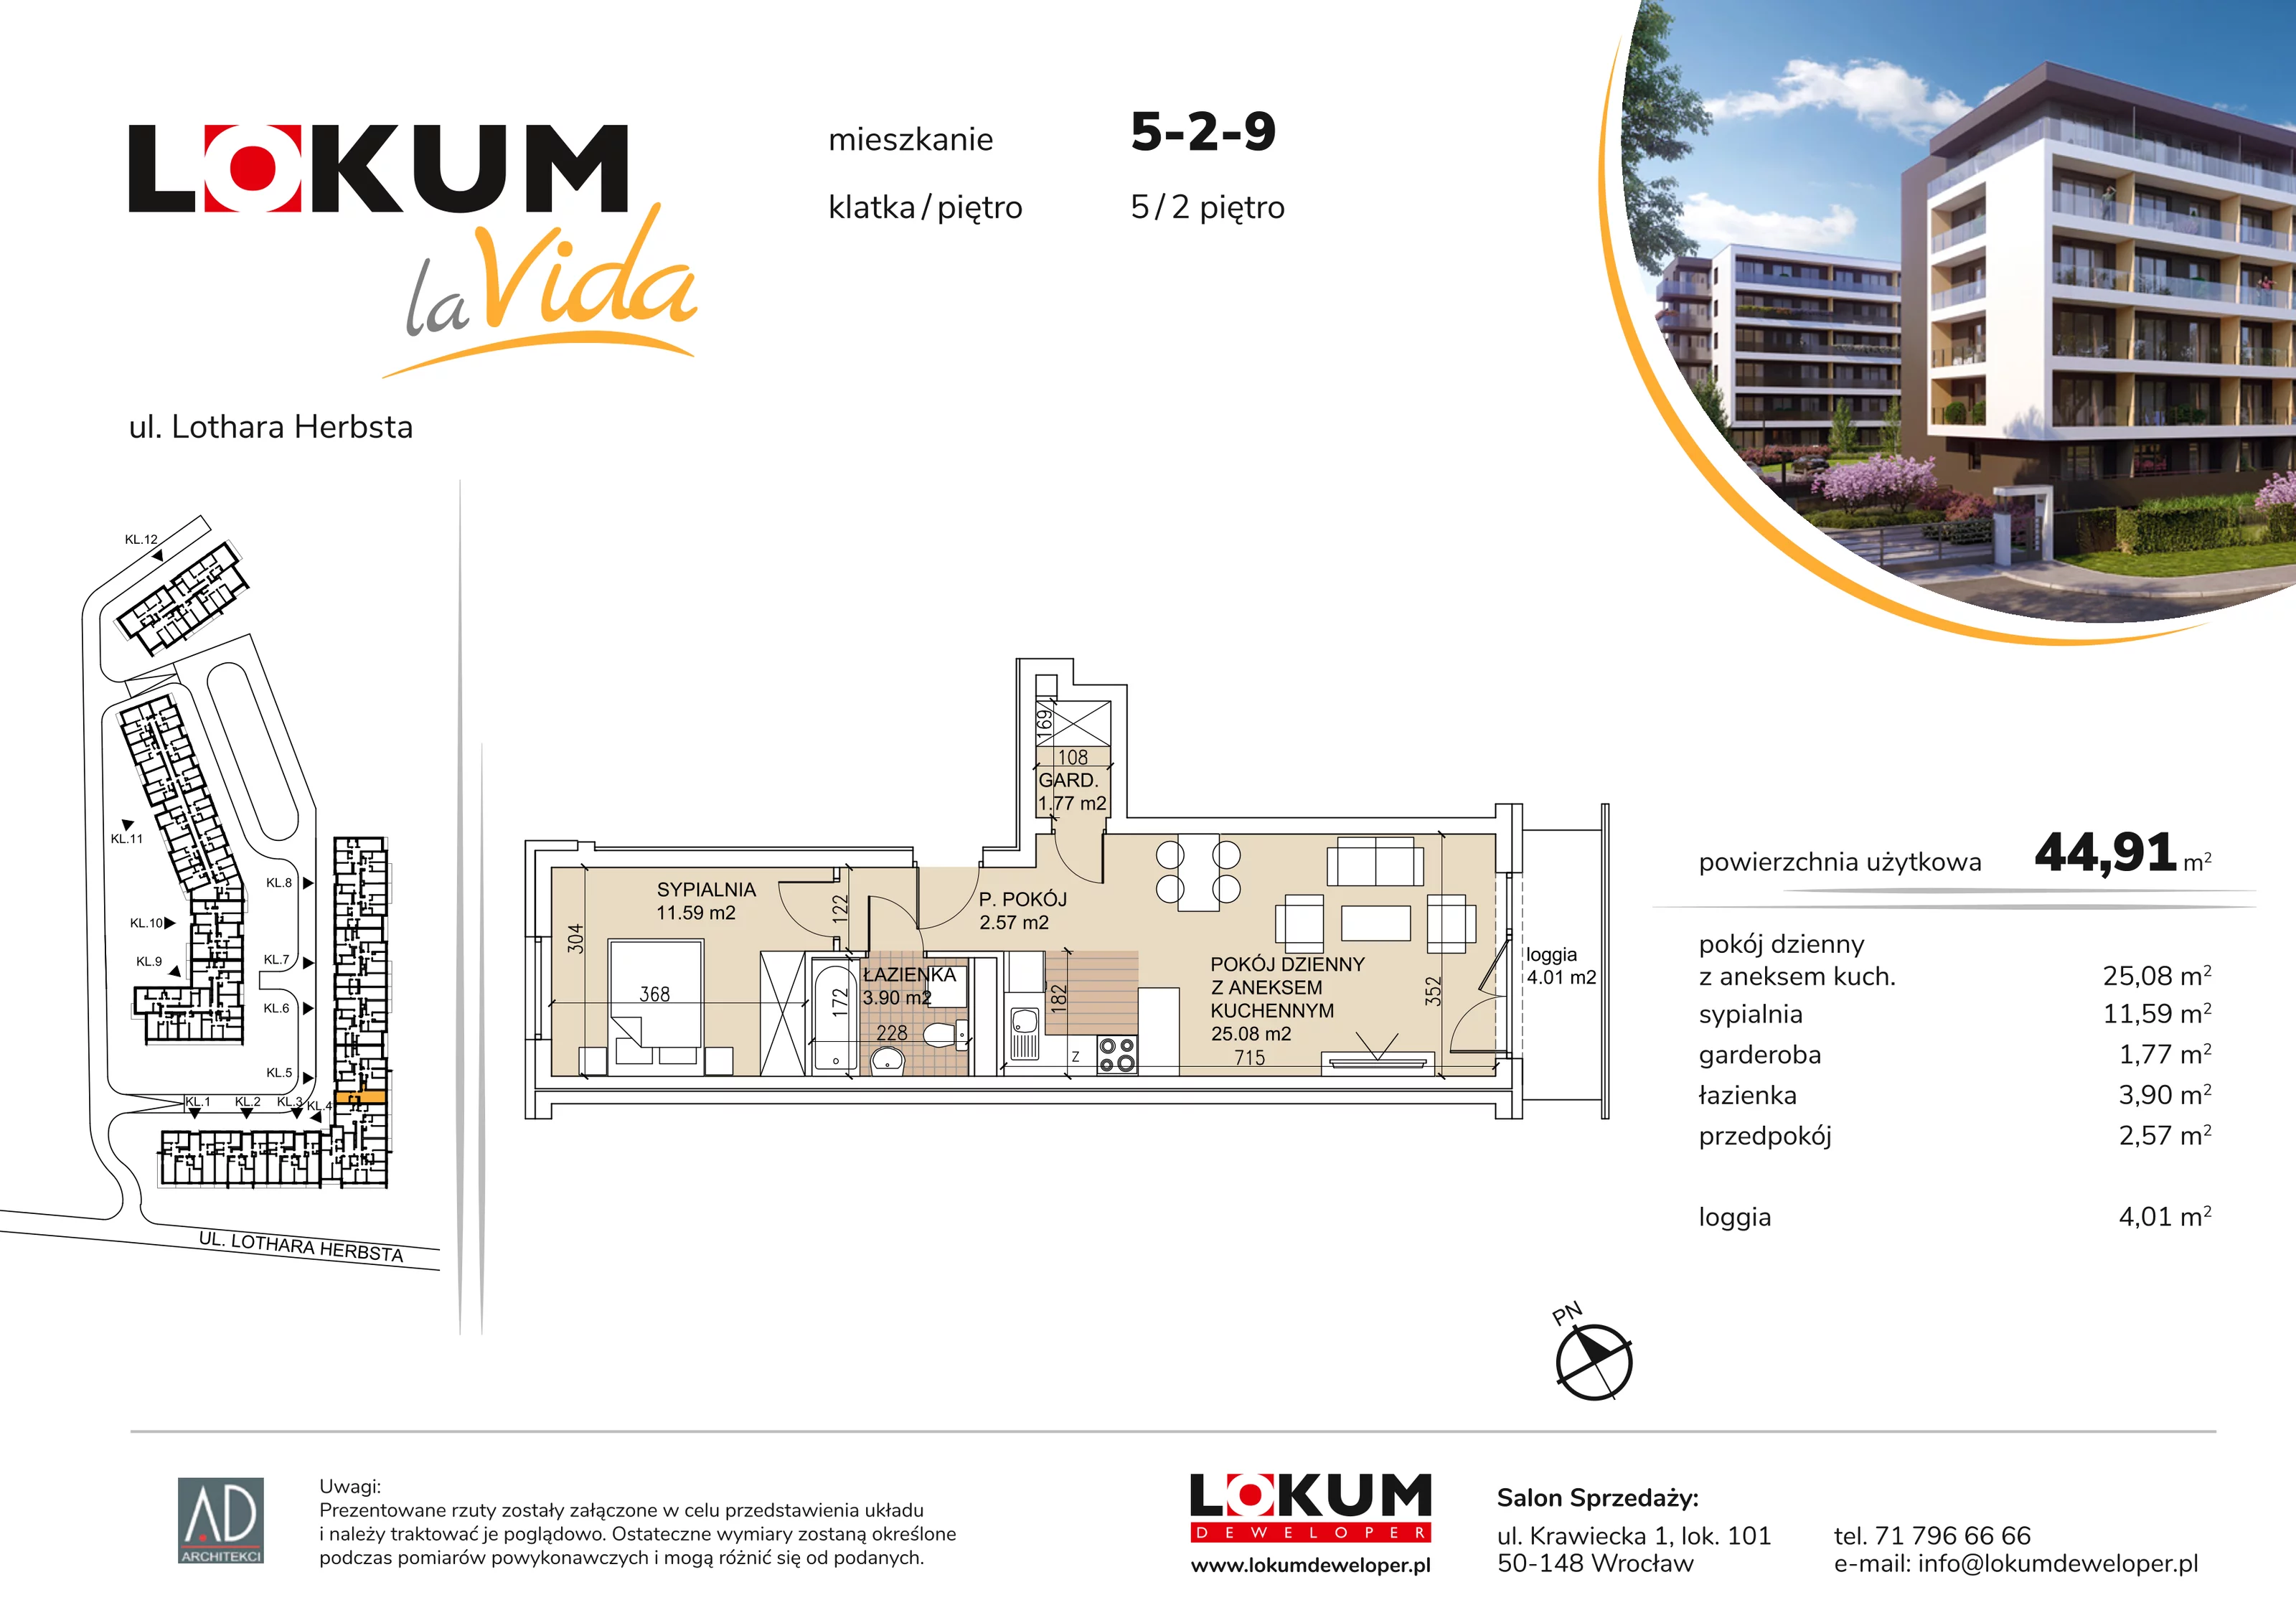 Mieszkanie 44,91 m², piętro 2, oferta nr 5-2-9, Lokum la Vida, Wrocław, Sołtysowice, ul. Lothara Herbsta